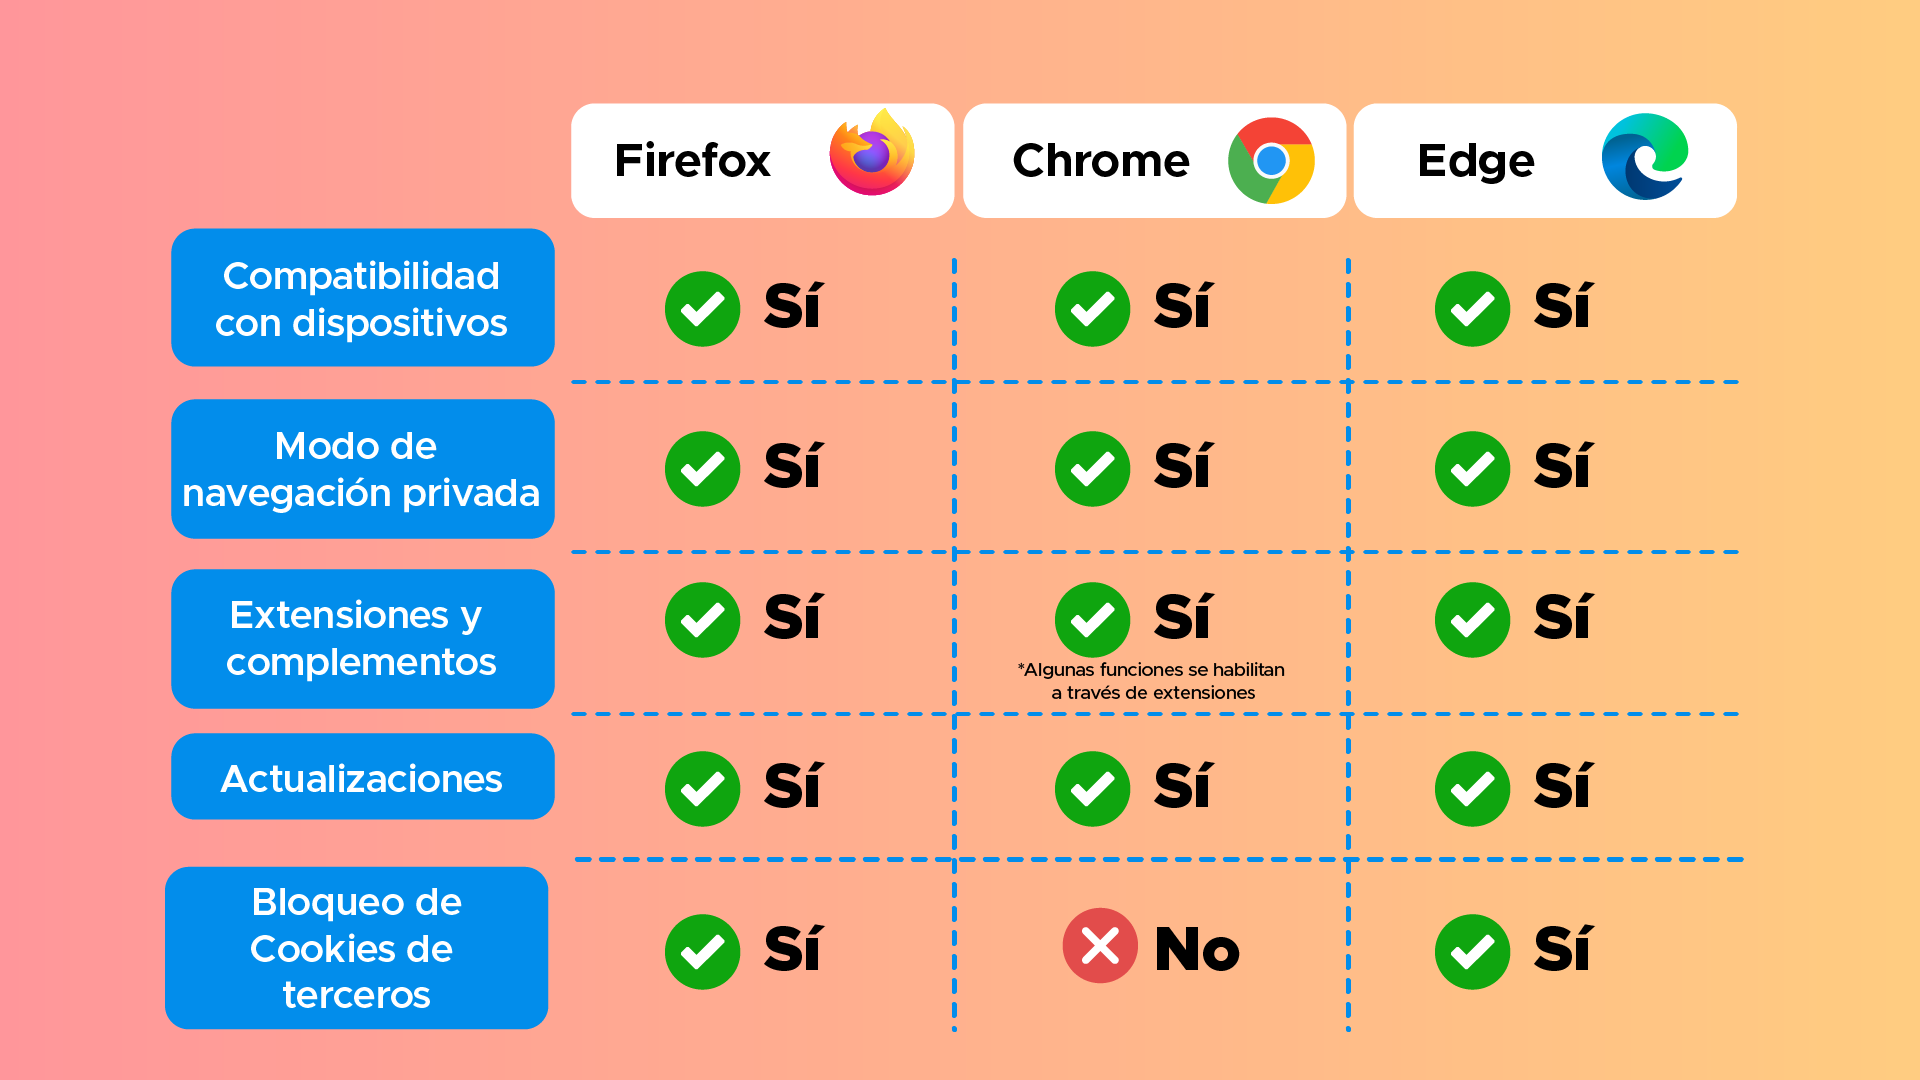 Comparación entre Firefox, Chrome y Edge